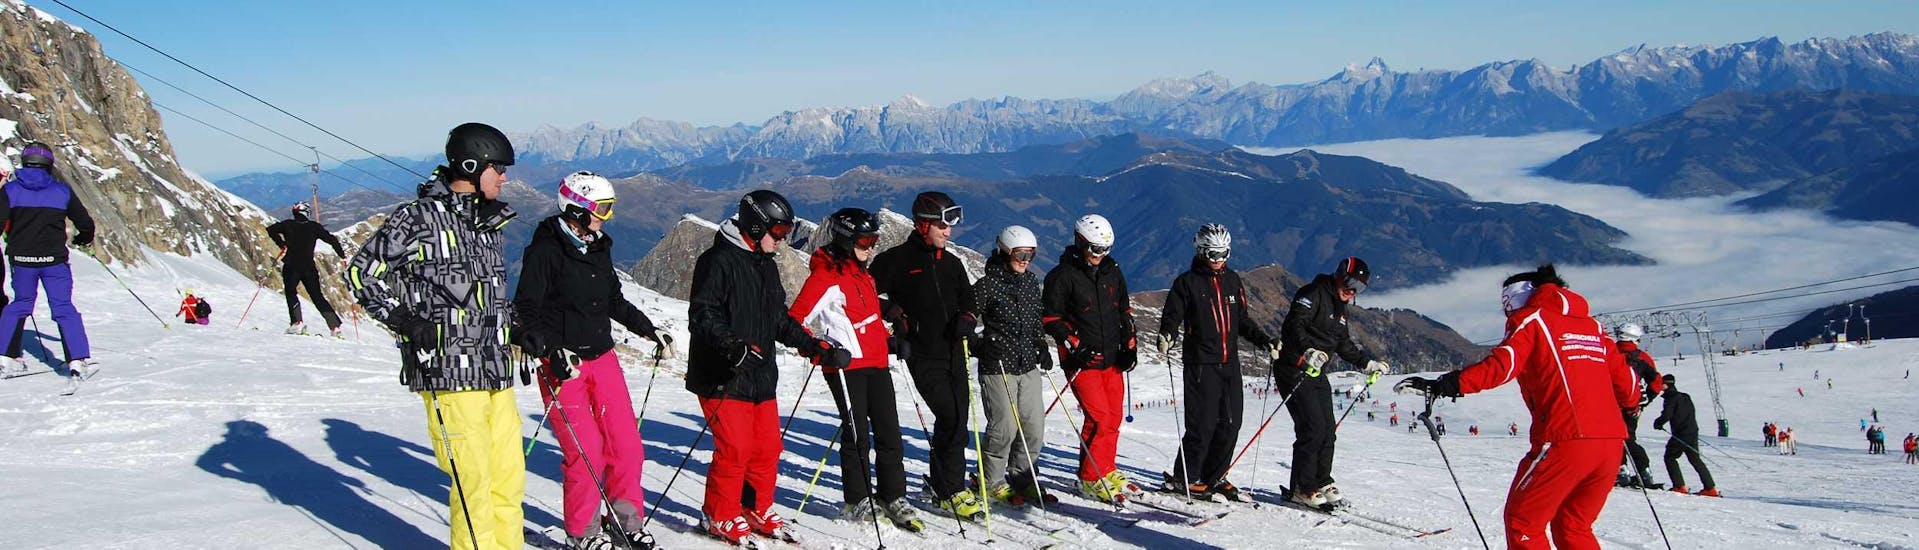 Clases de esquí para adultos a partir de 15 años para principiantes con Skischule Ski Dome Viehhofen.